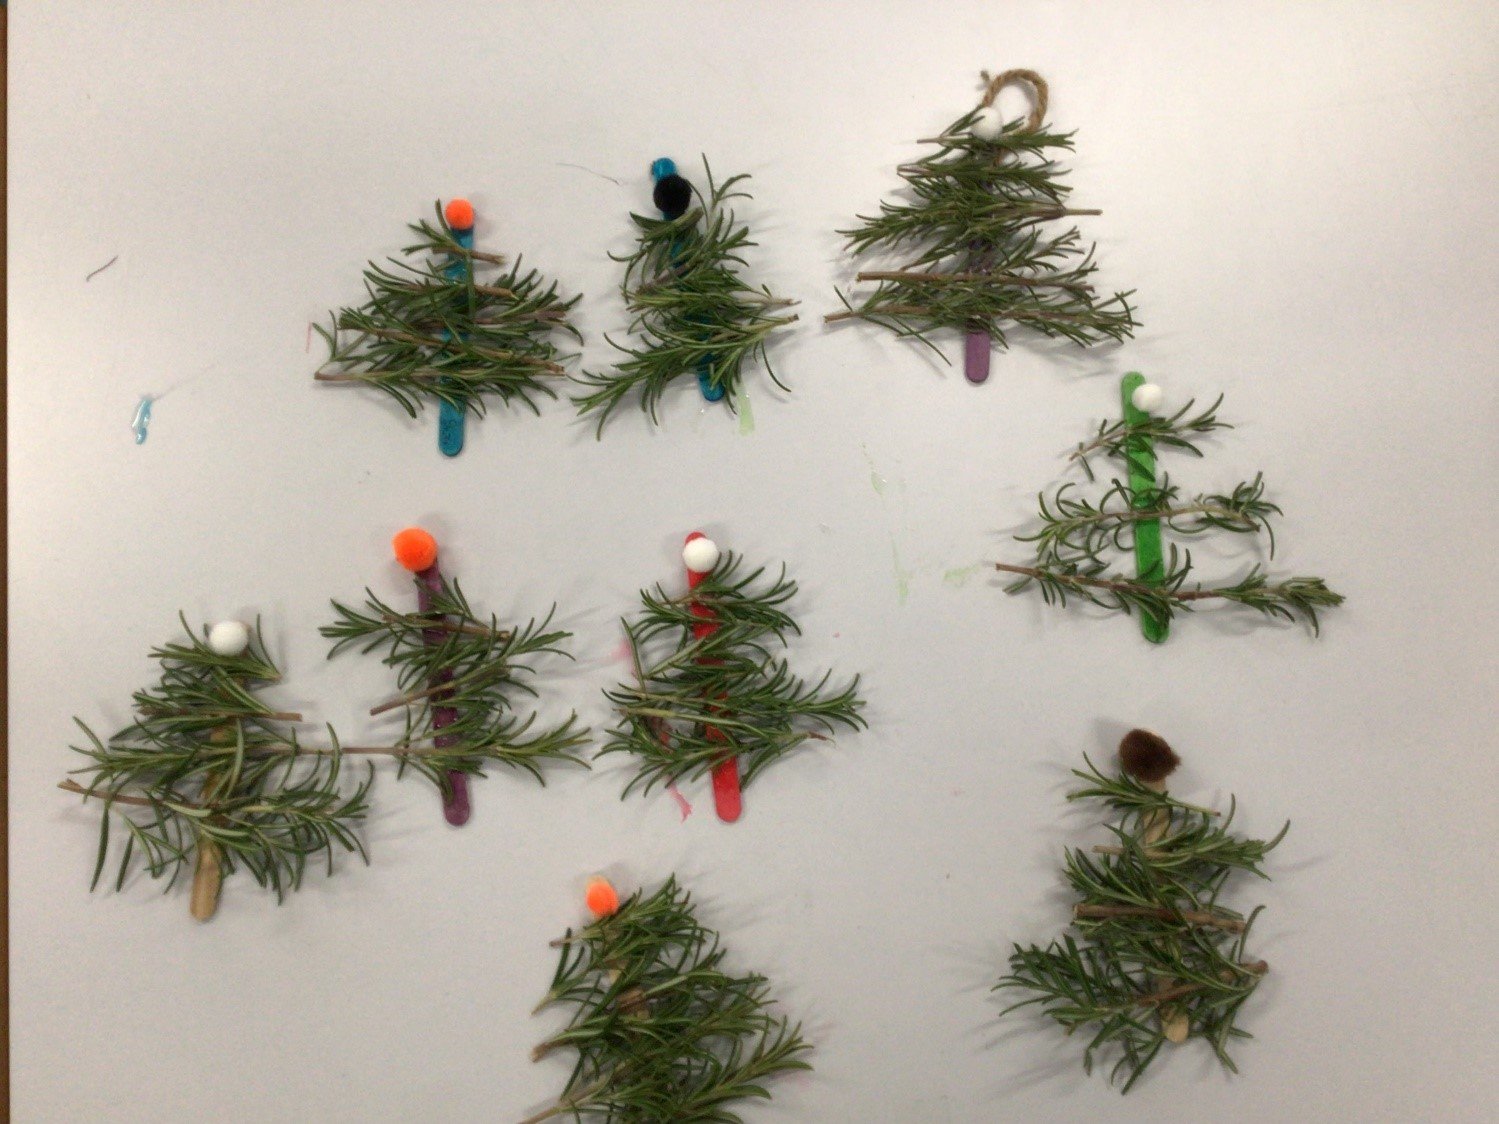 Rosemary Christmas trees - LEAF Schools